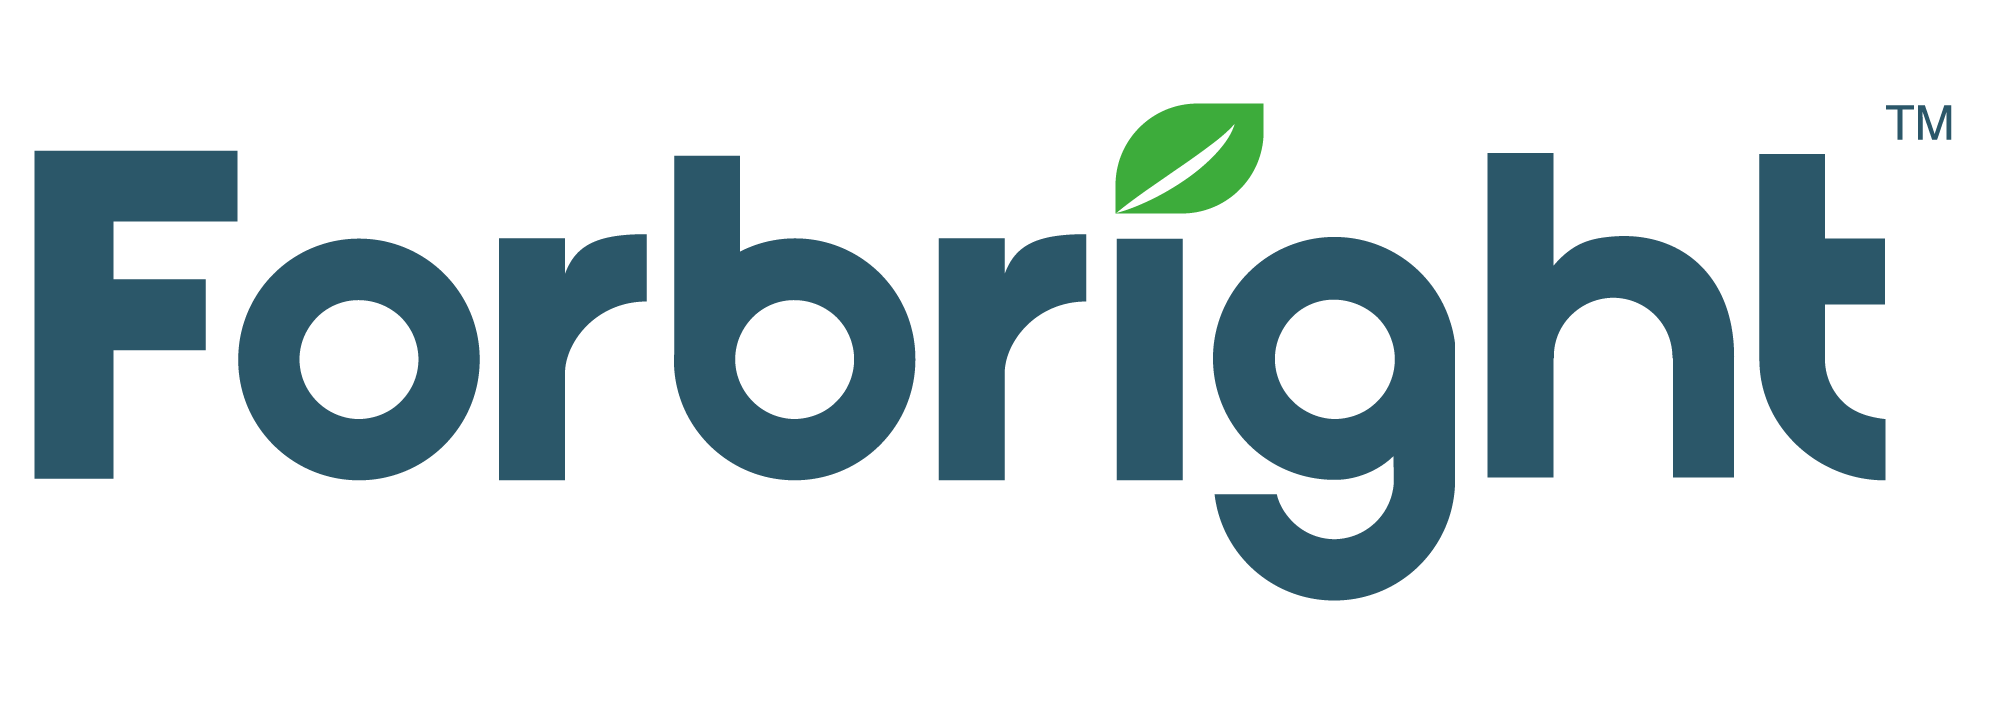 Forbright Bank Company Logo